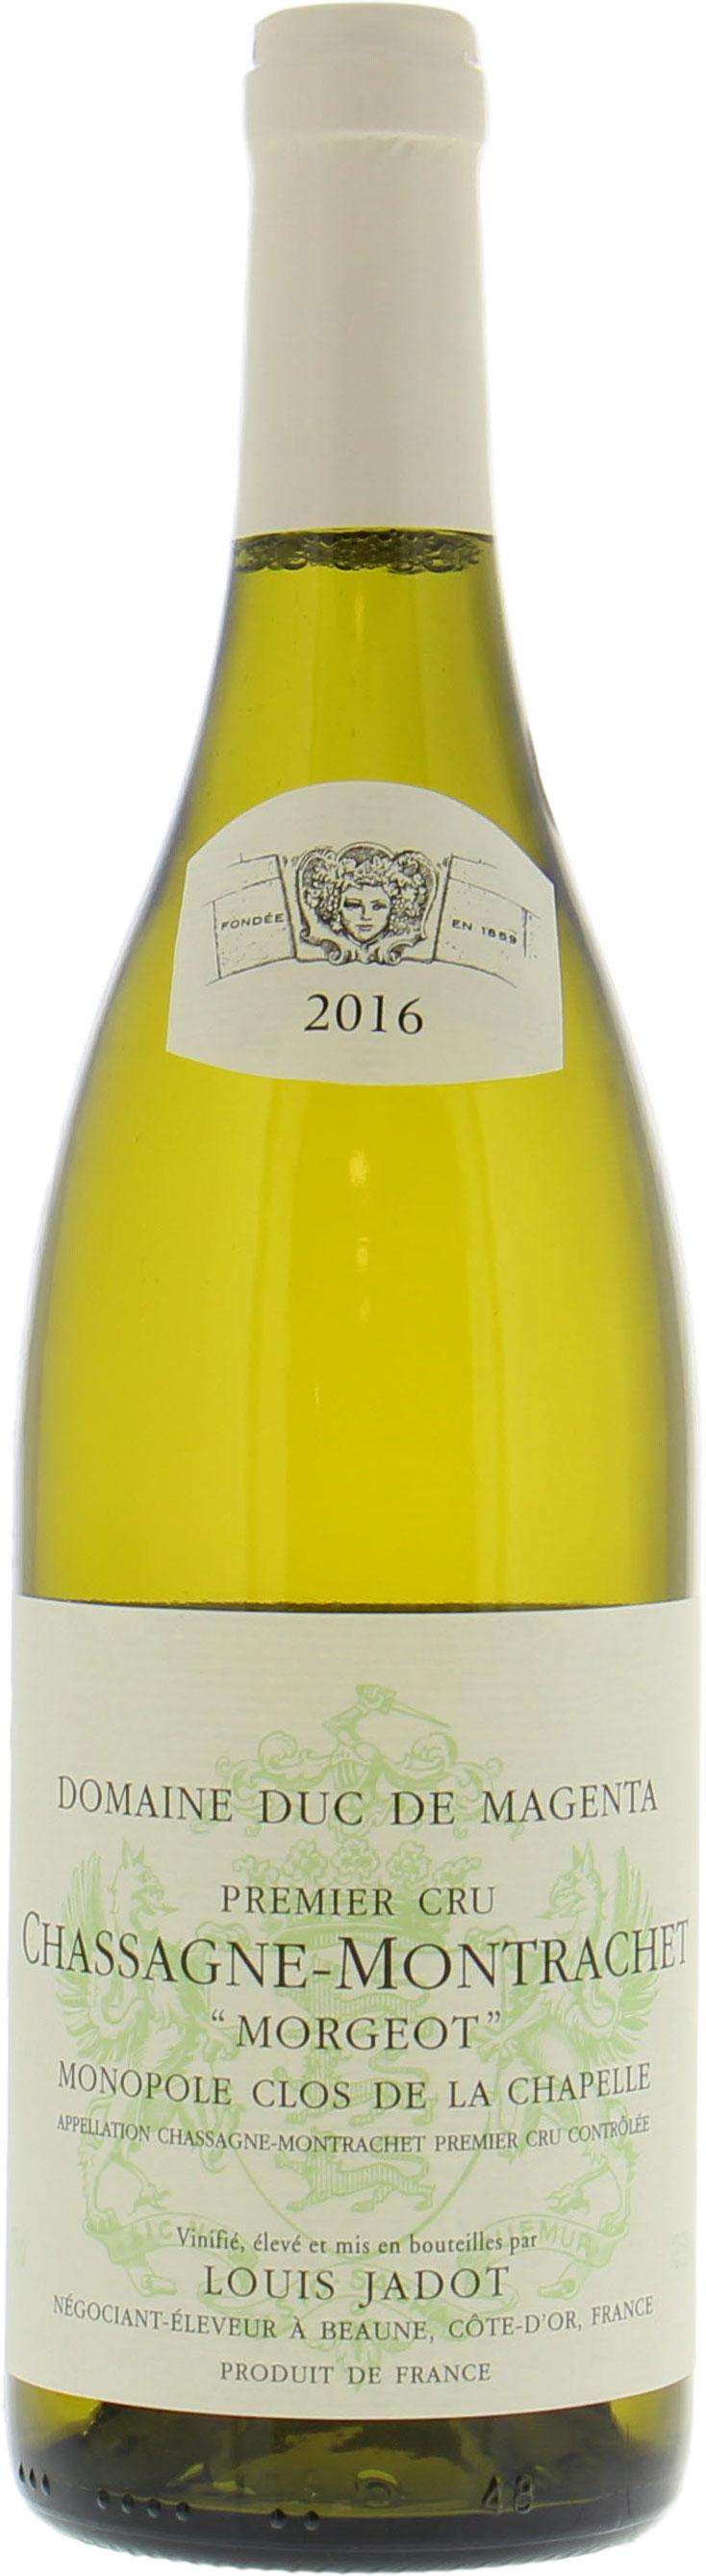 Jadot - Chassagne Montrachet Morgeot Clos de la Chapelle Blanc 2016 Perfect